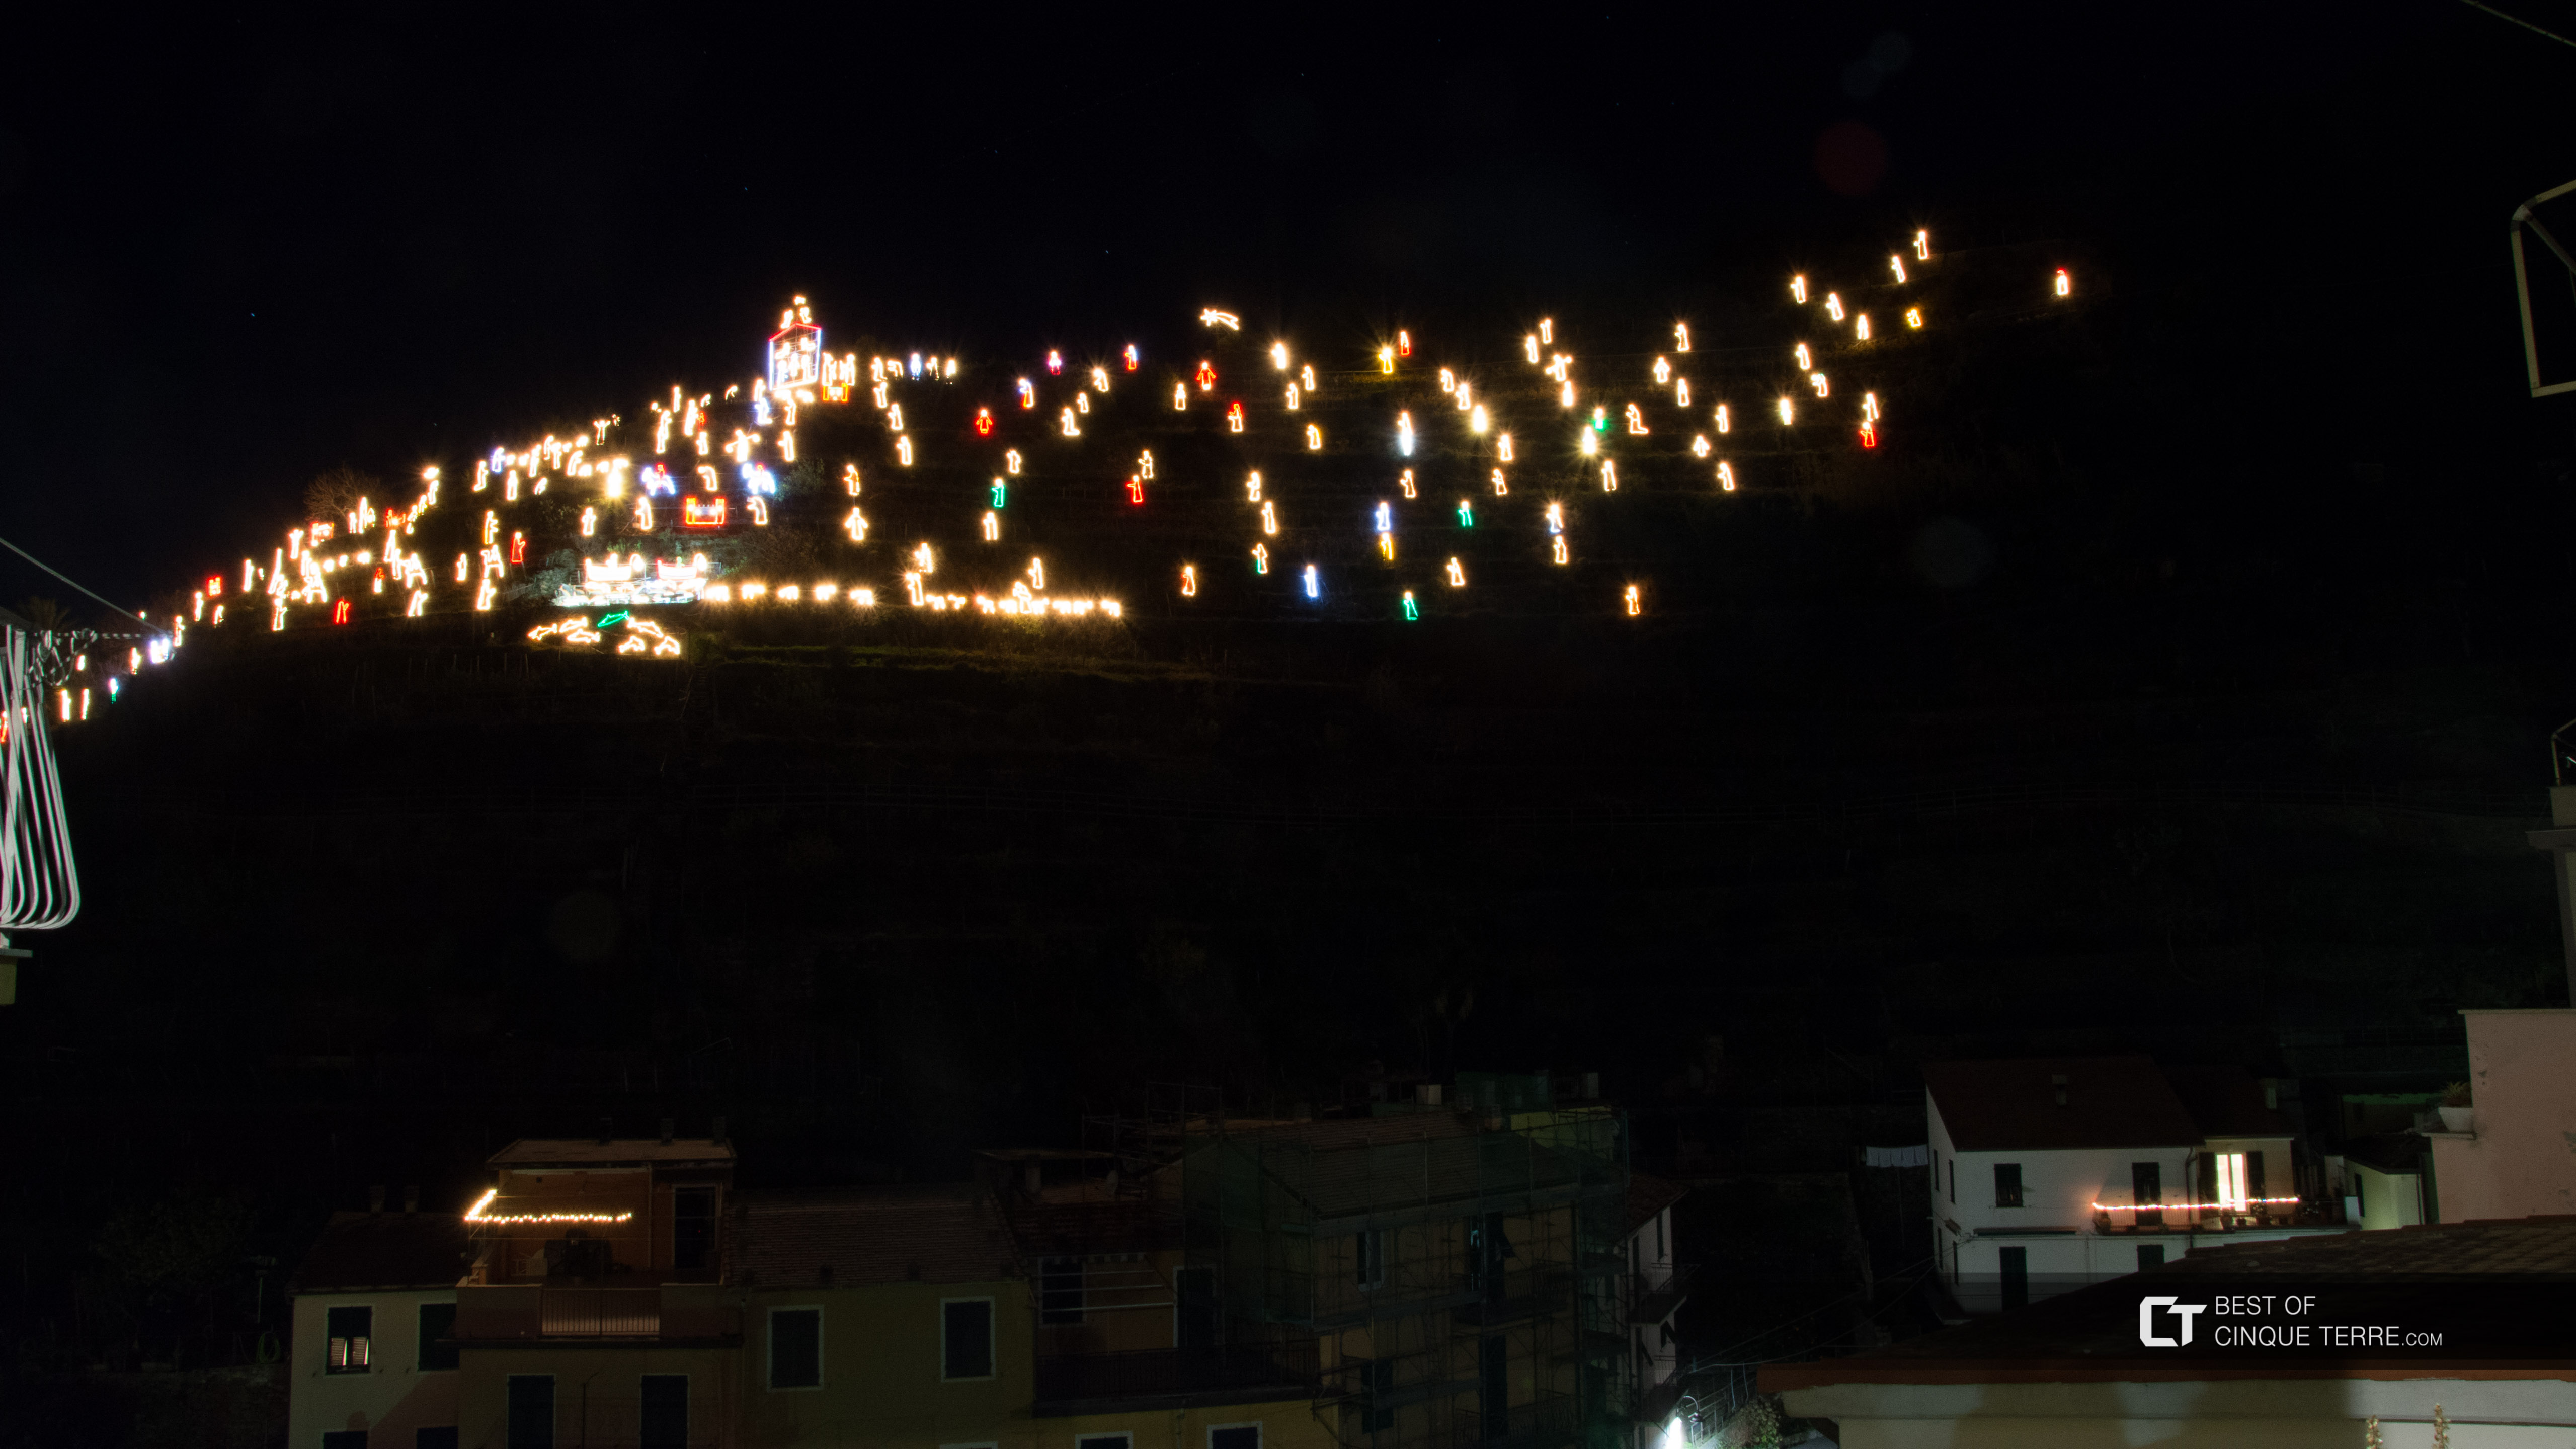 Pesebre de Navidad, vista desde la plaza central del pueblo, Manarola, Cinque Terre, Italia